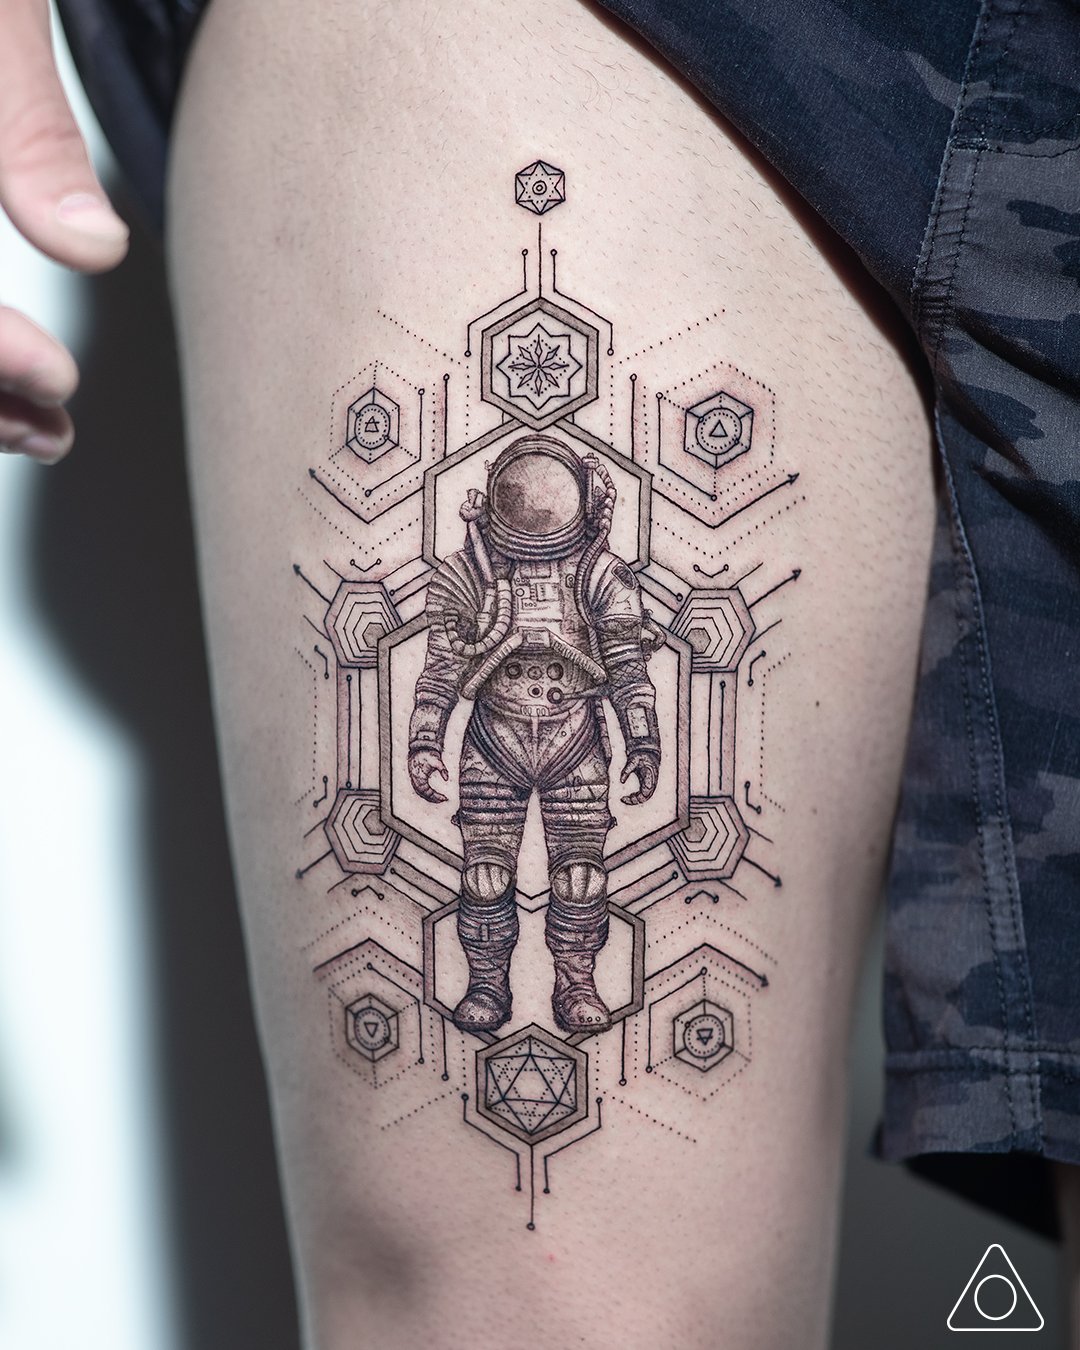 Astronaut tattoo design by Miletune on DeviantArt